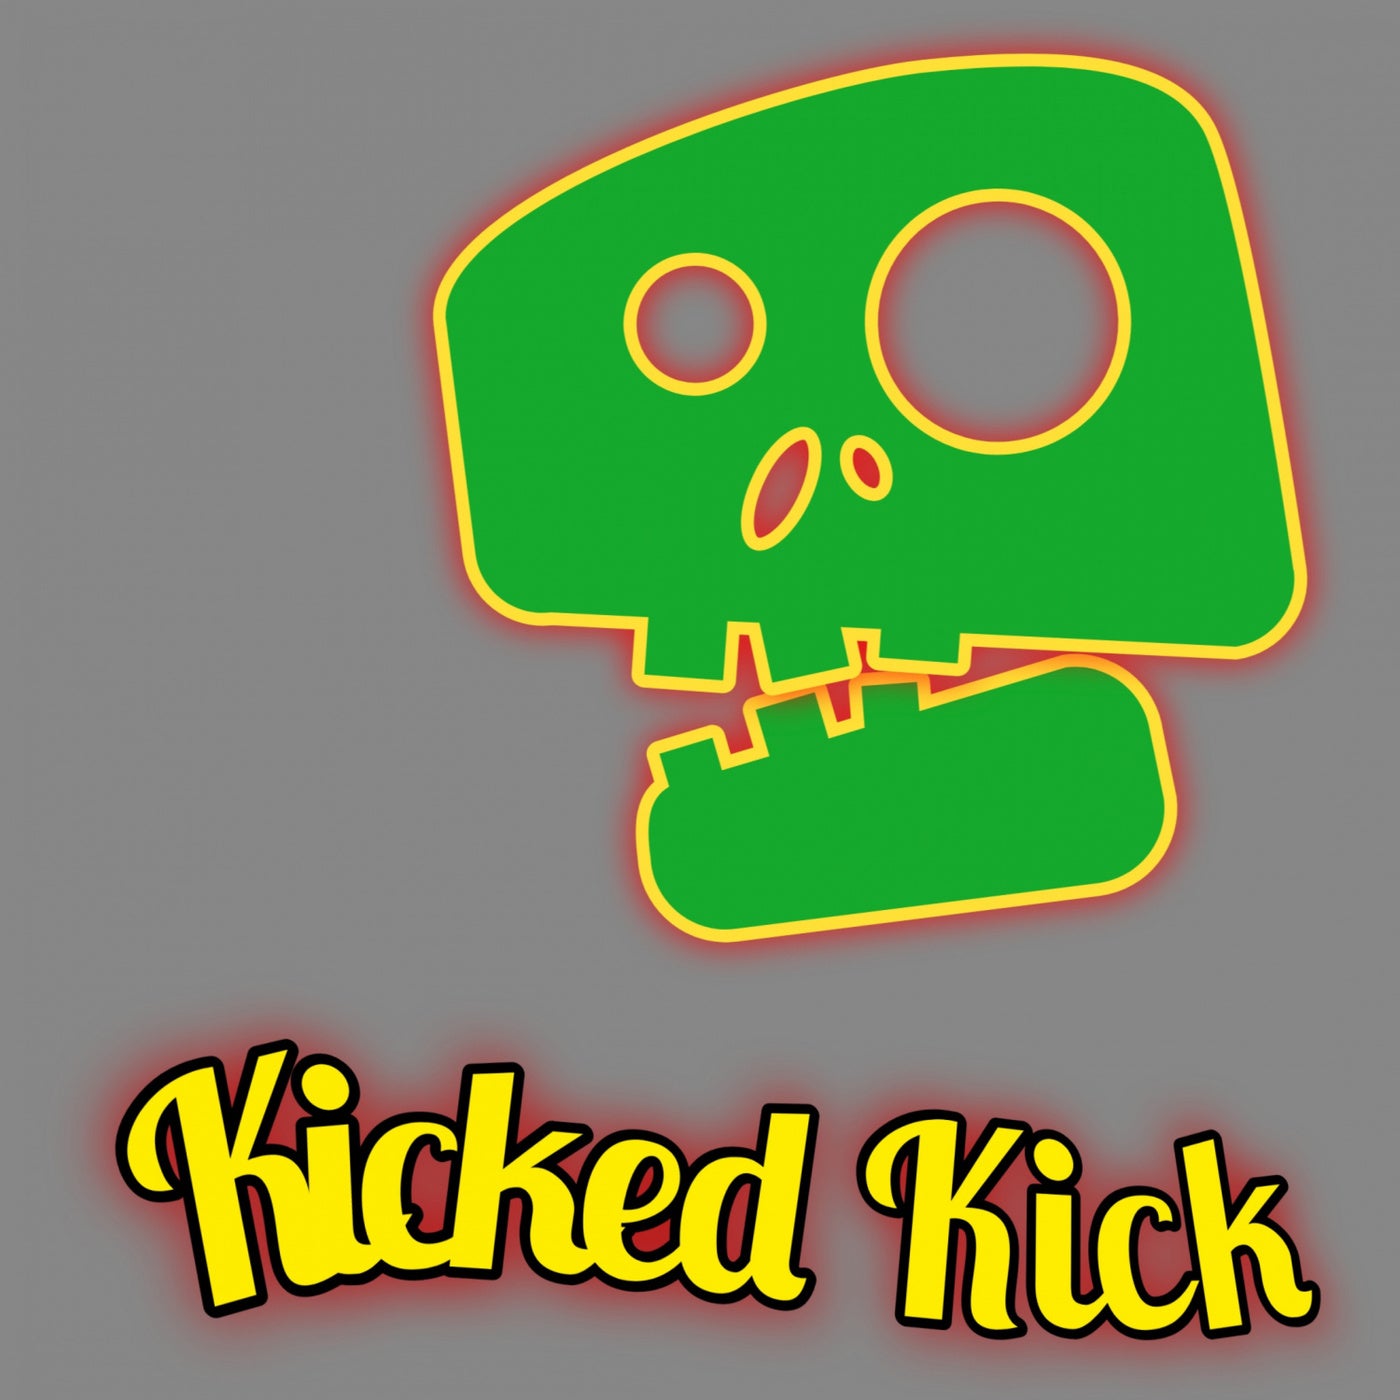 Kicked Kick